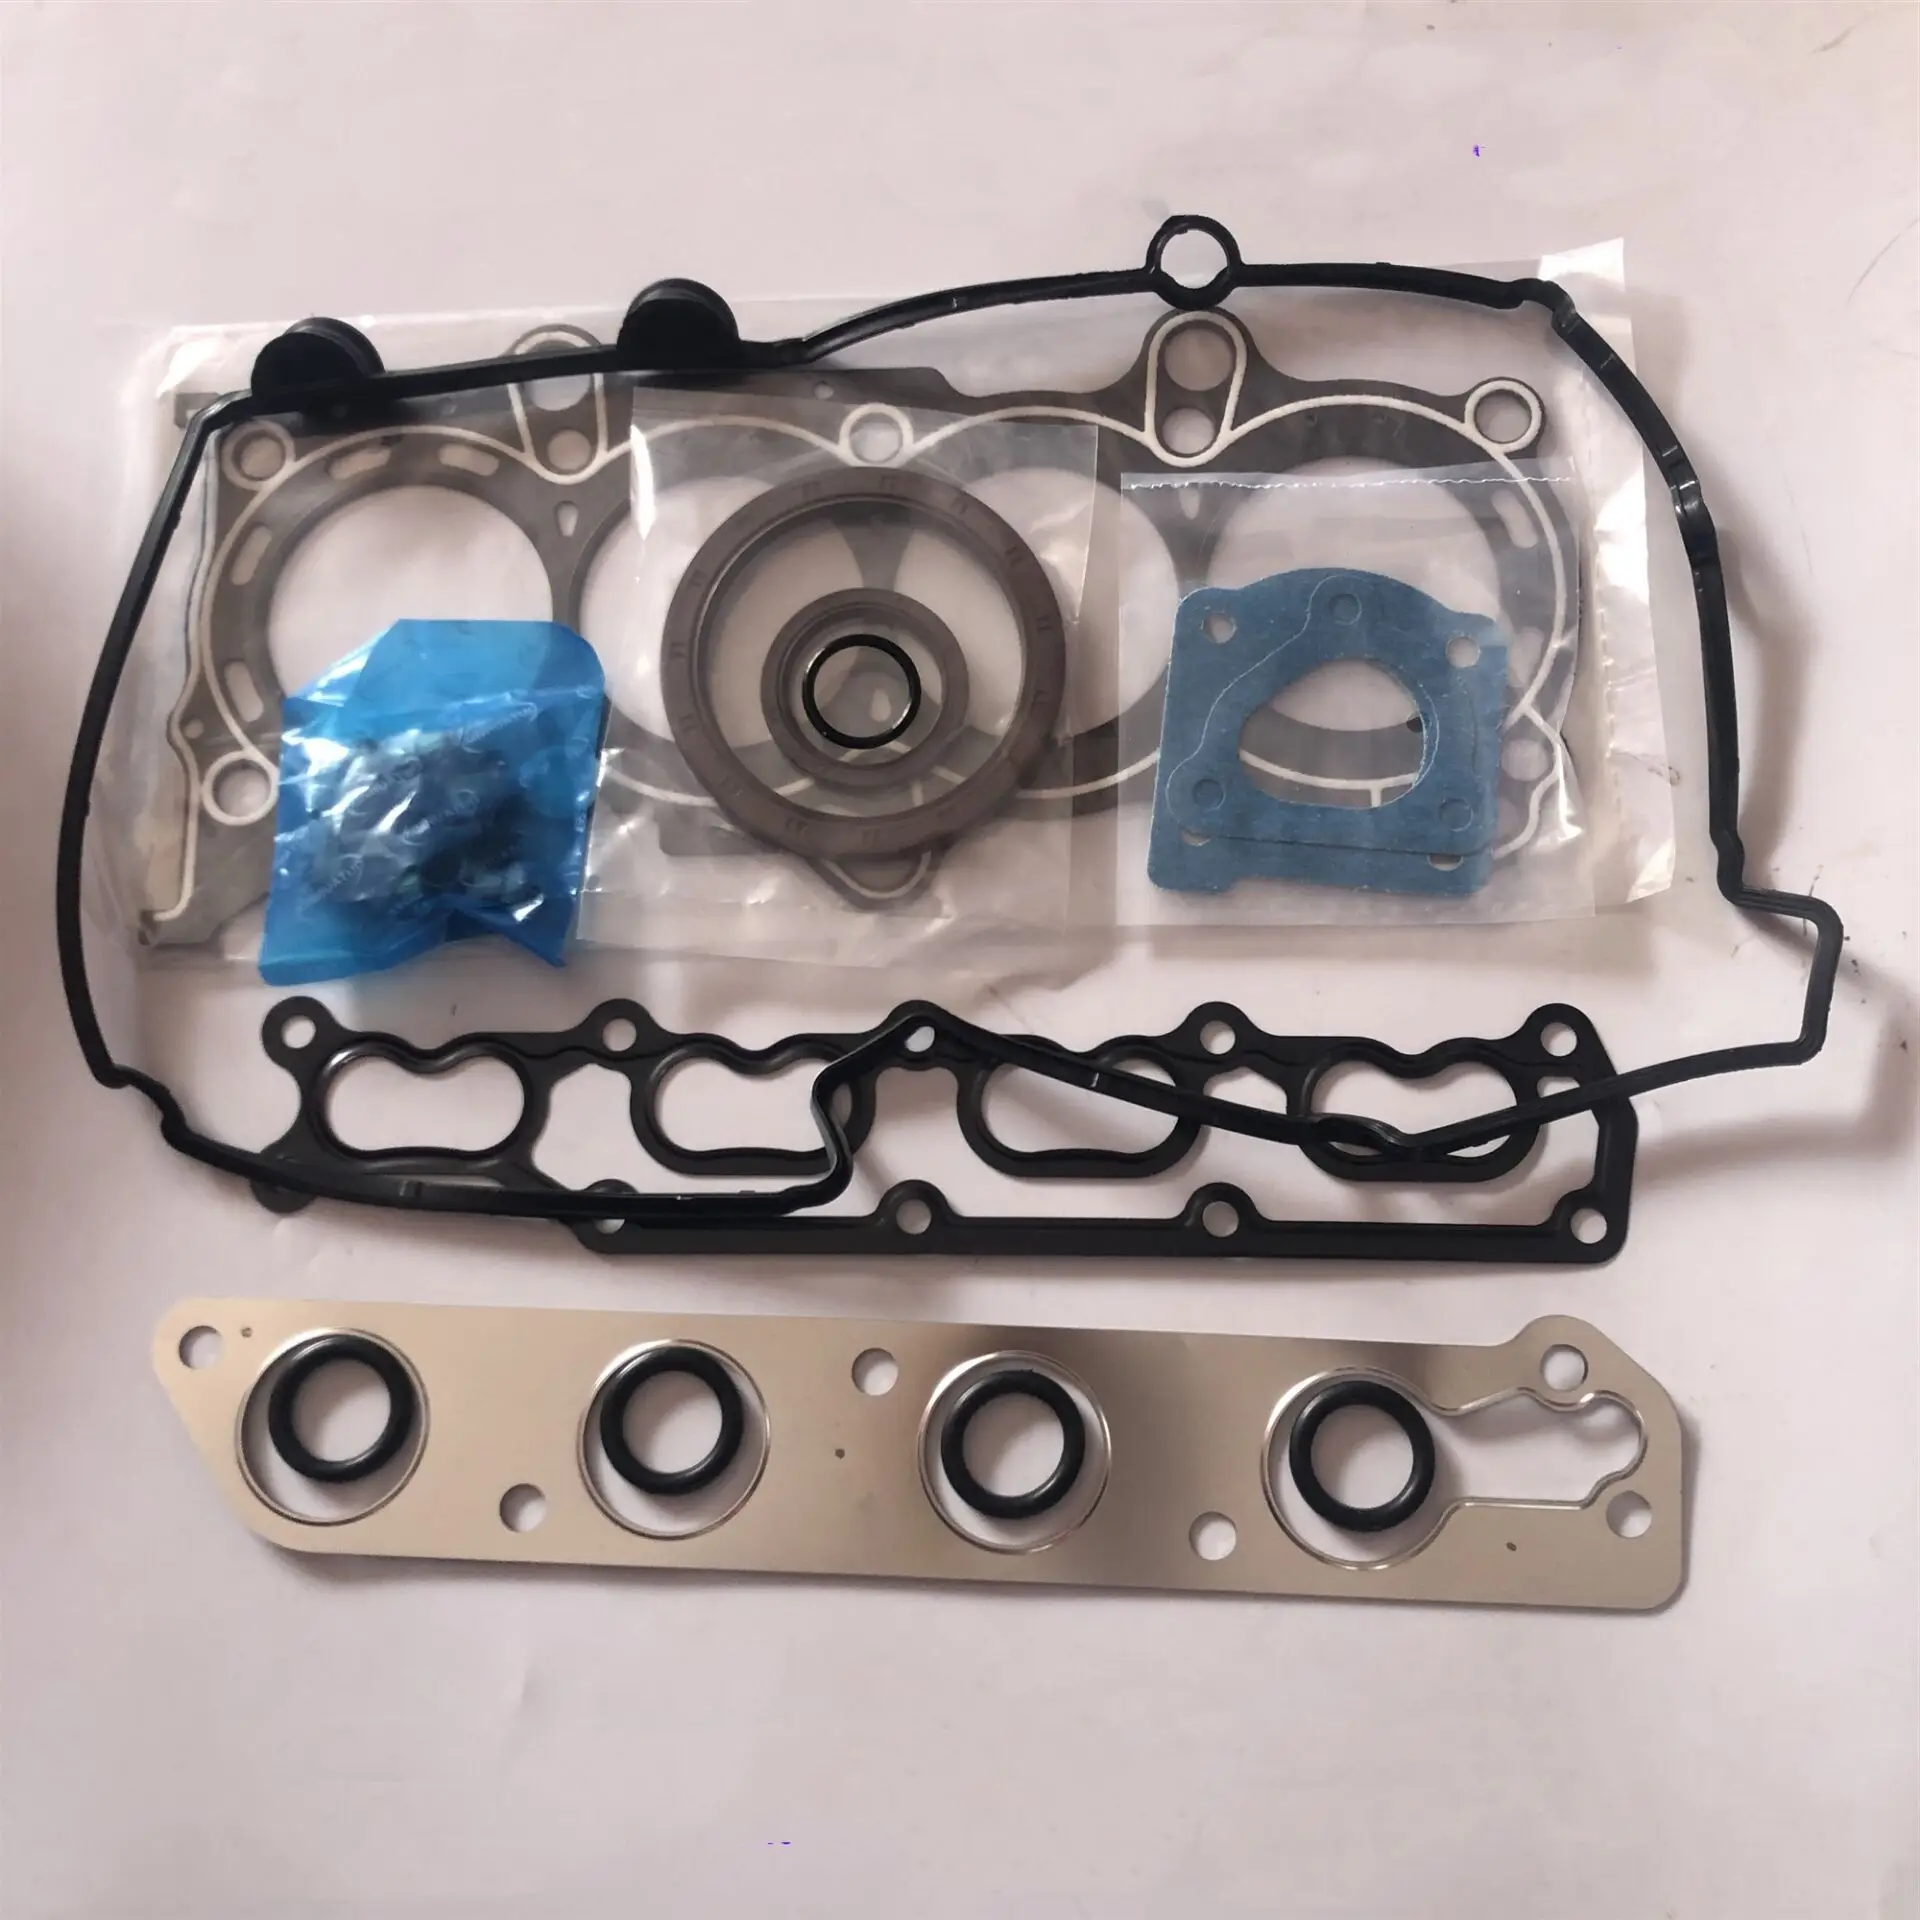 

Комплект прокладок для двигателя K14B, прокладки для капитального ремонта двигателя для Suzuki Landy Freedom CH6391, Cool Car Jetski